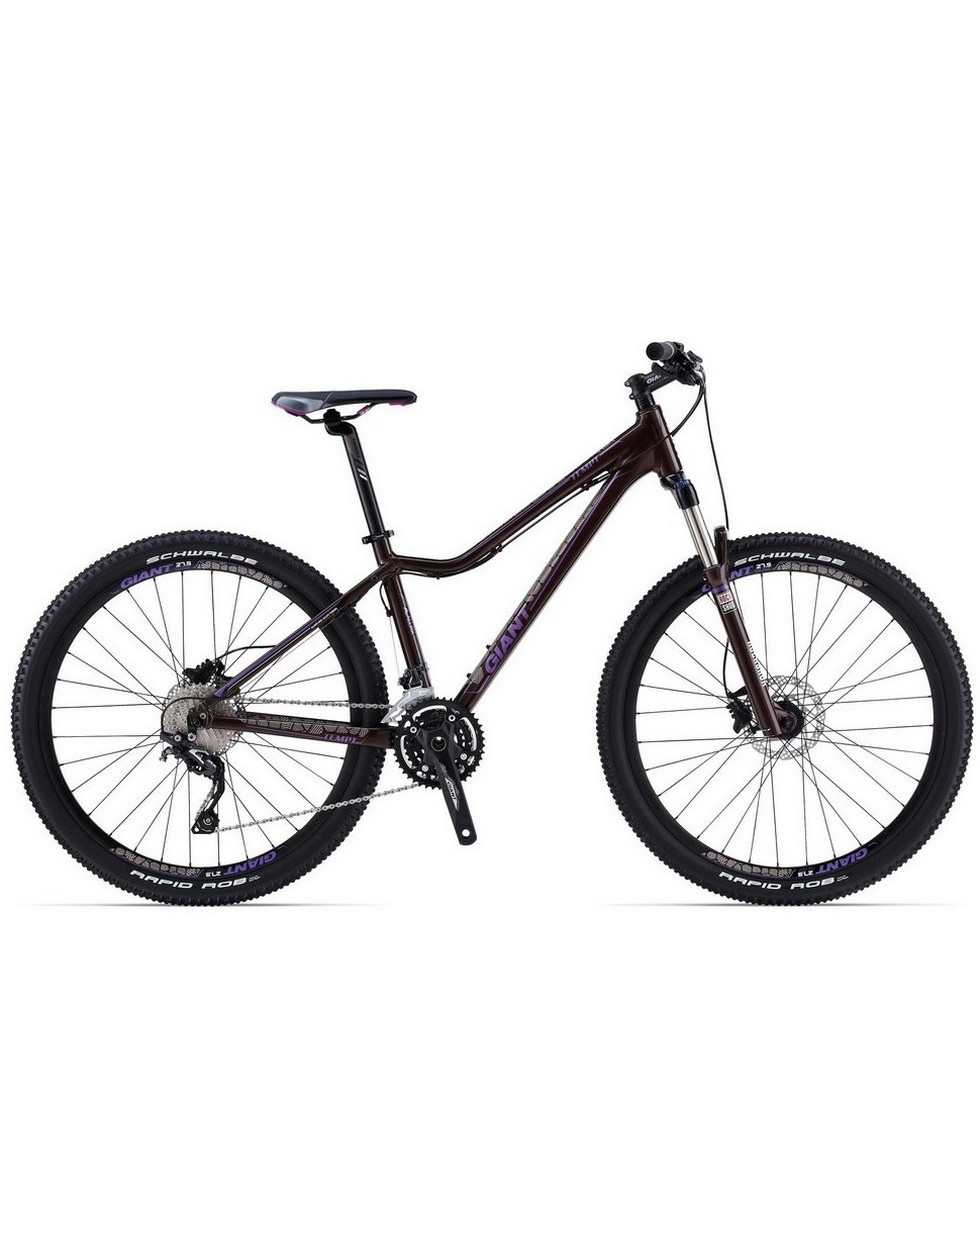 GIANT Велосипед TEMPT 2 27.5" 2014 Артикул: 4164282